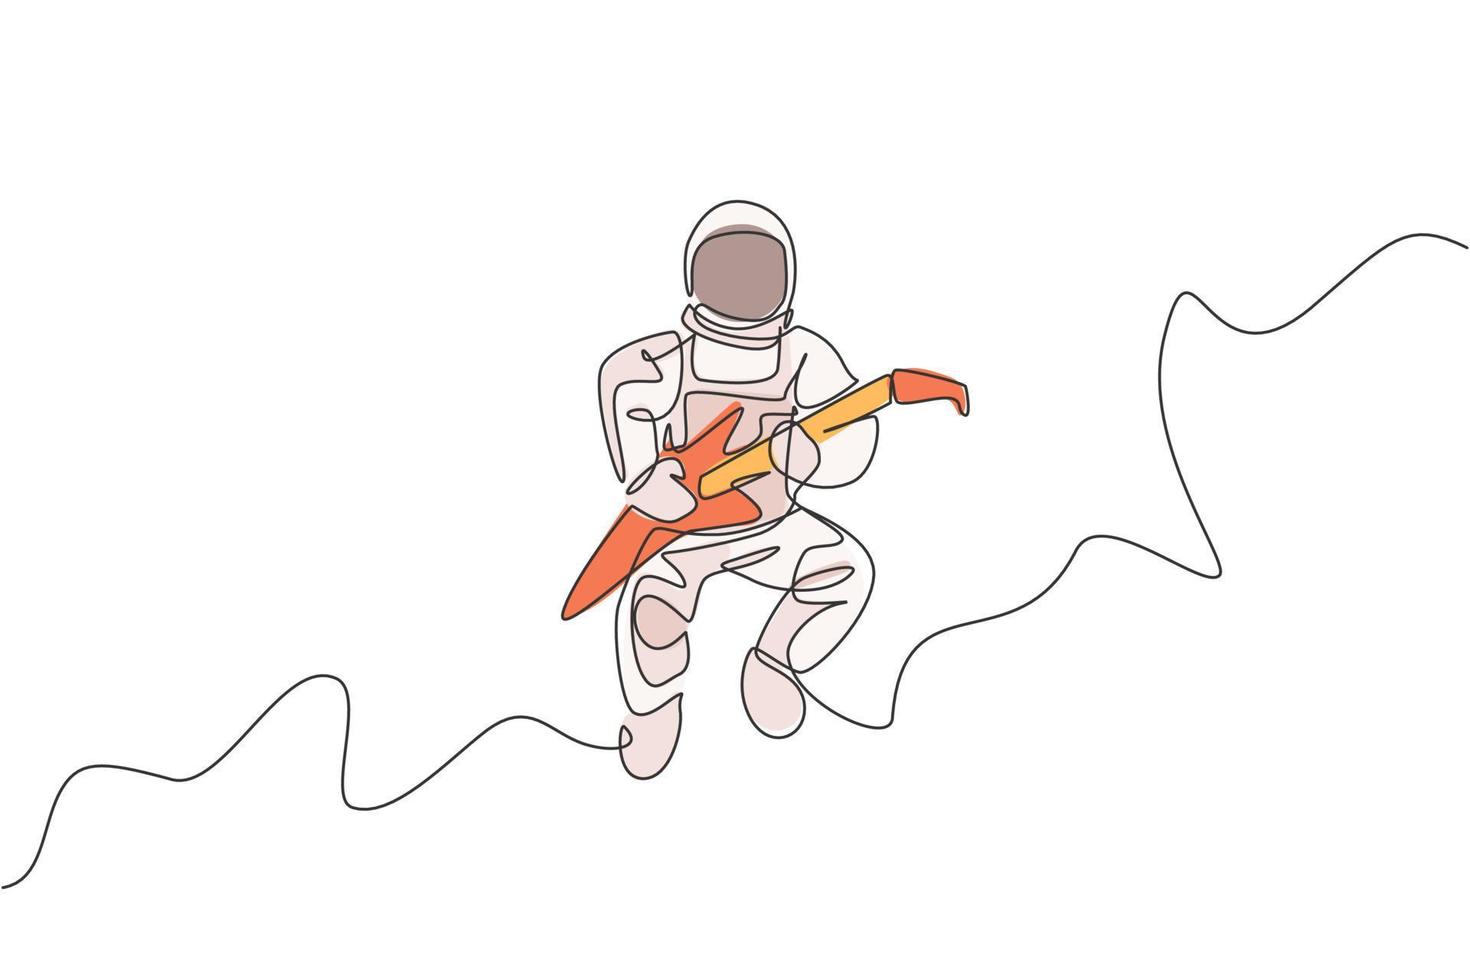 un dibujo de línea continua de un astronauta con traje espacial tocando la guitarra eléctrica en el universo de la galaxia. concepto de concierto de música del espacio exterior. Ilustración de vector de diseño gráfico de dibujo de línea única dinámica